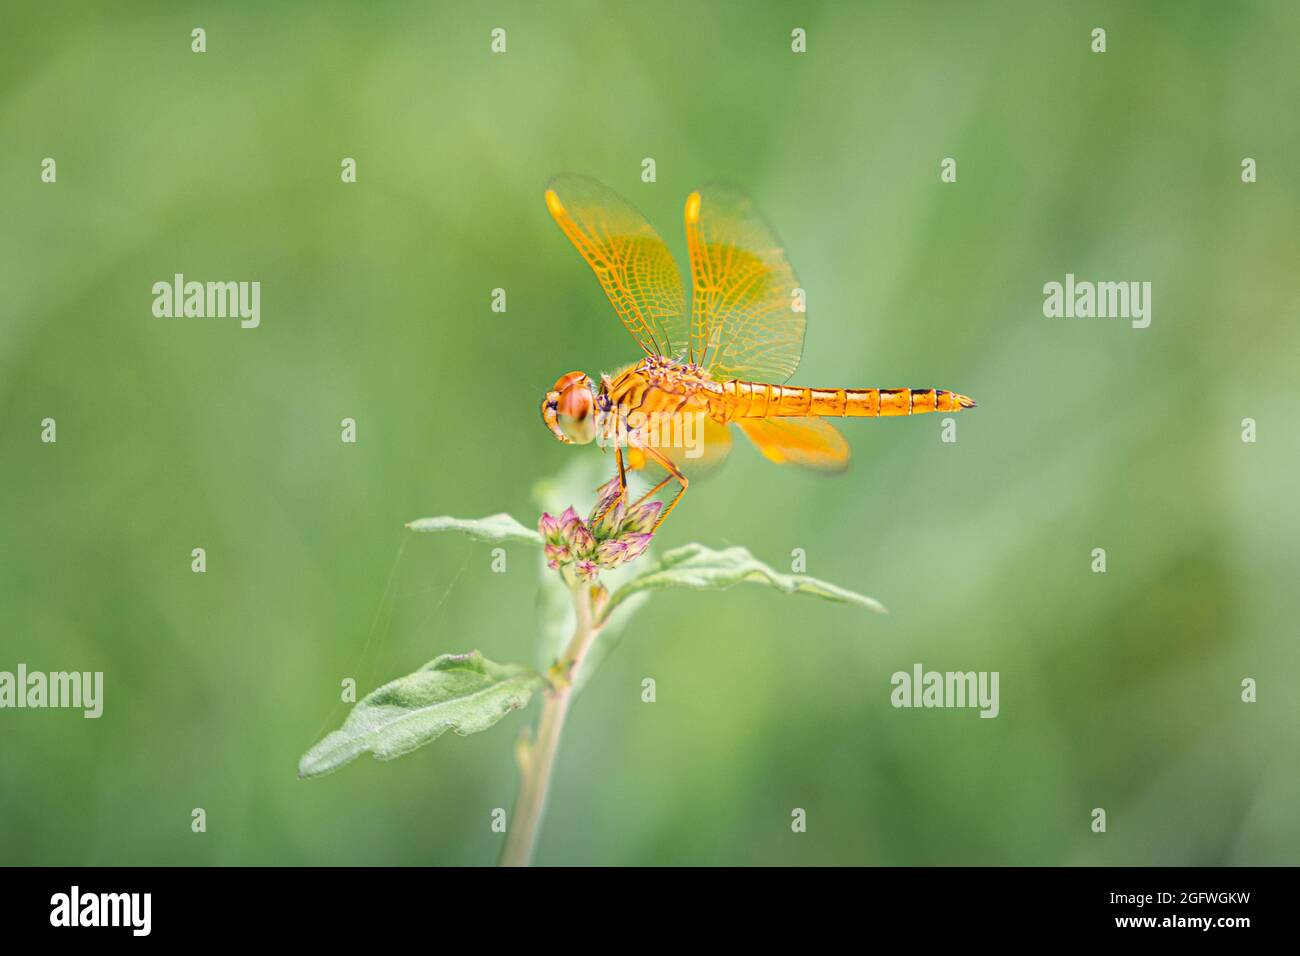 Gros plan sur la libellule orange qui se trouve au-dessus de la petite branche d'arbre avec un fond vert flou. Banque D'Images